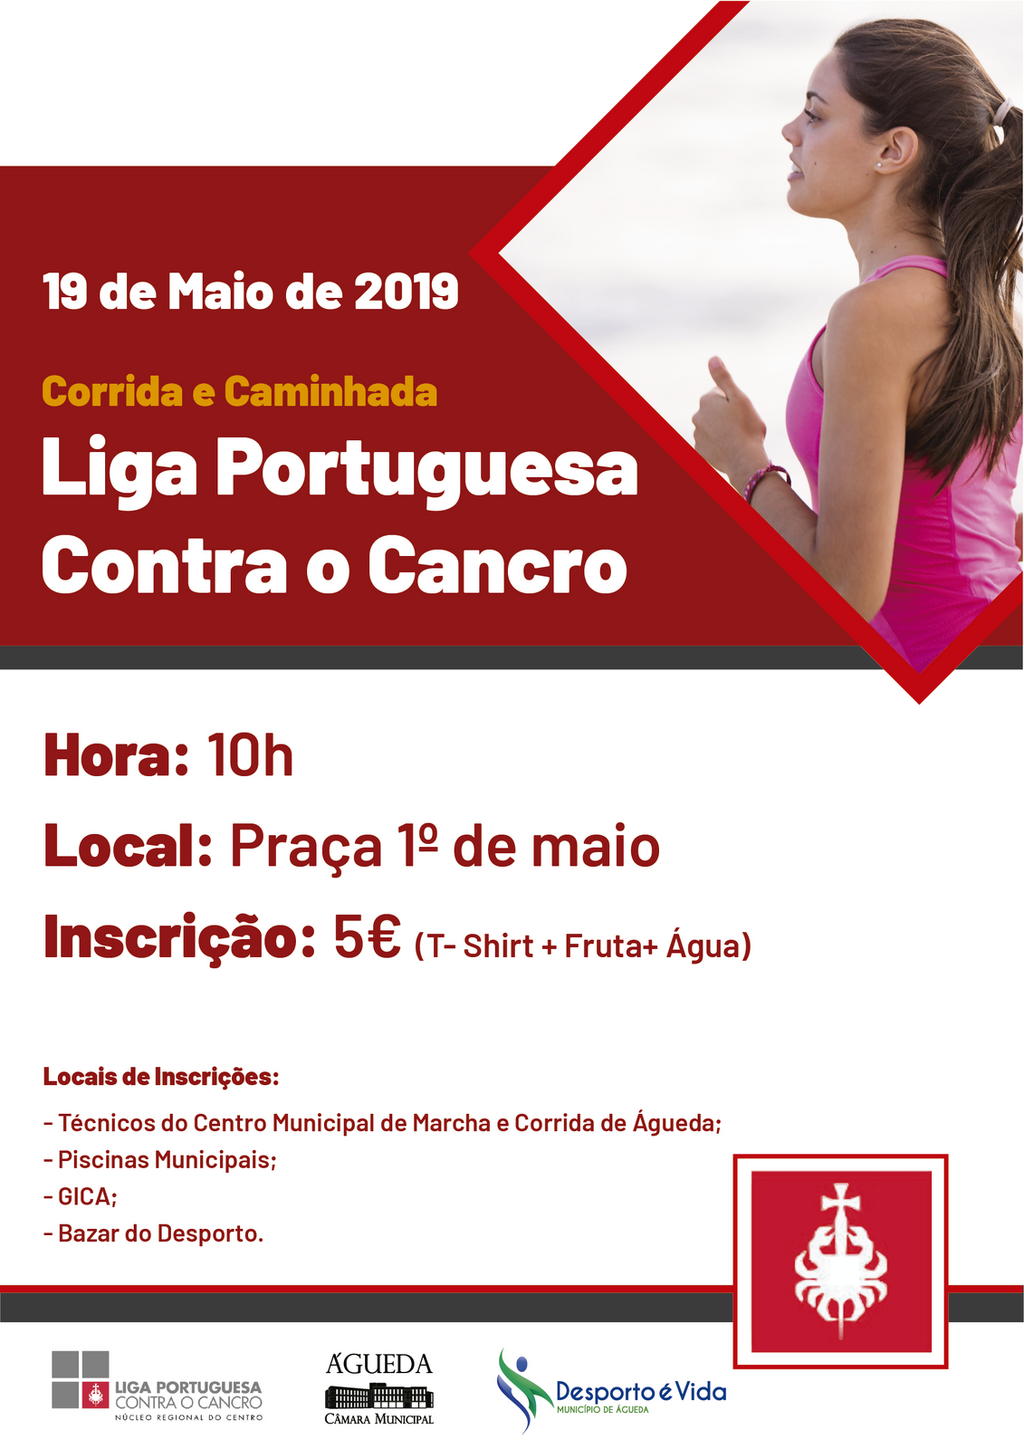 Corrida e Caminhada - Liga Portuguesa contra o Cancro